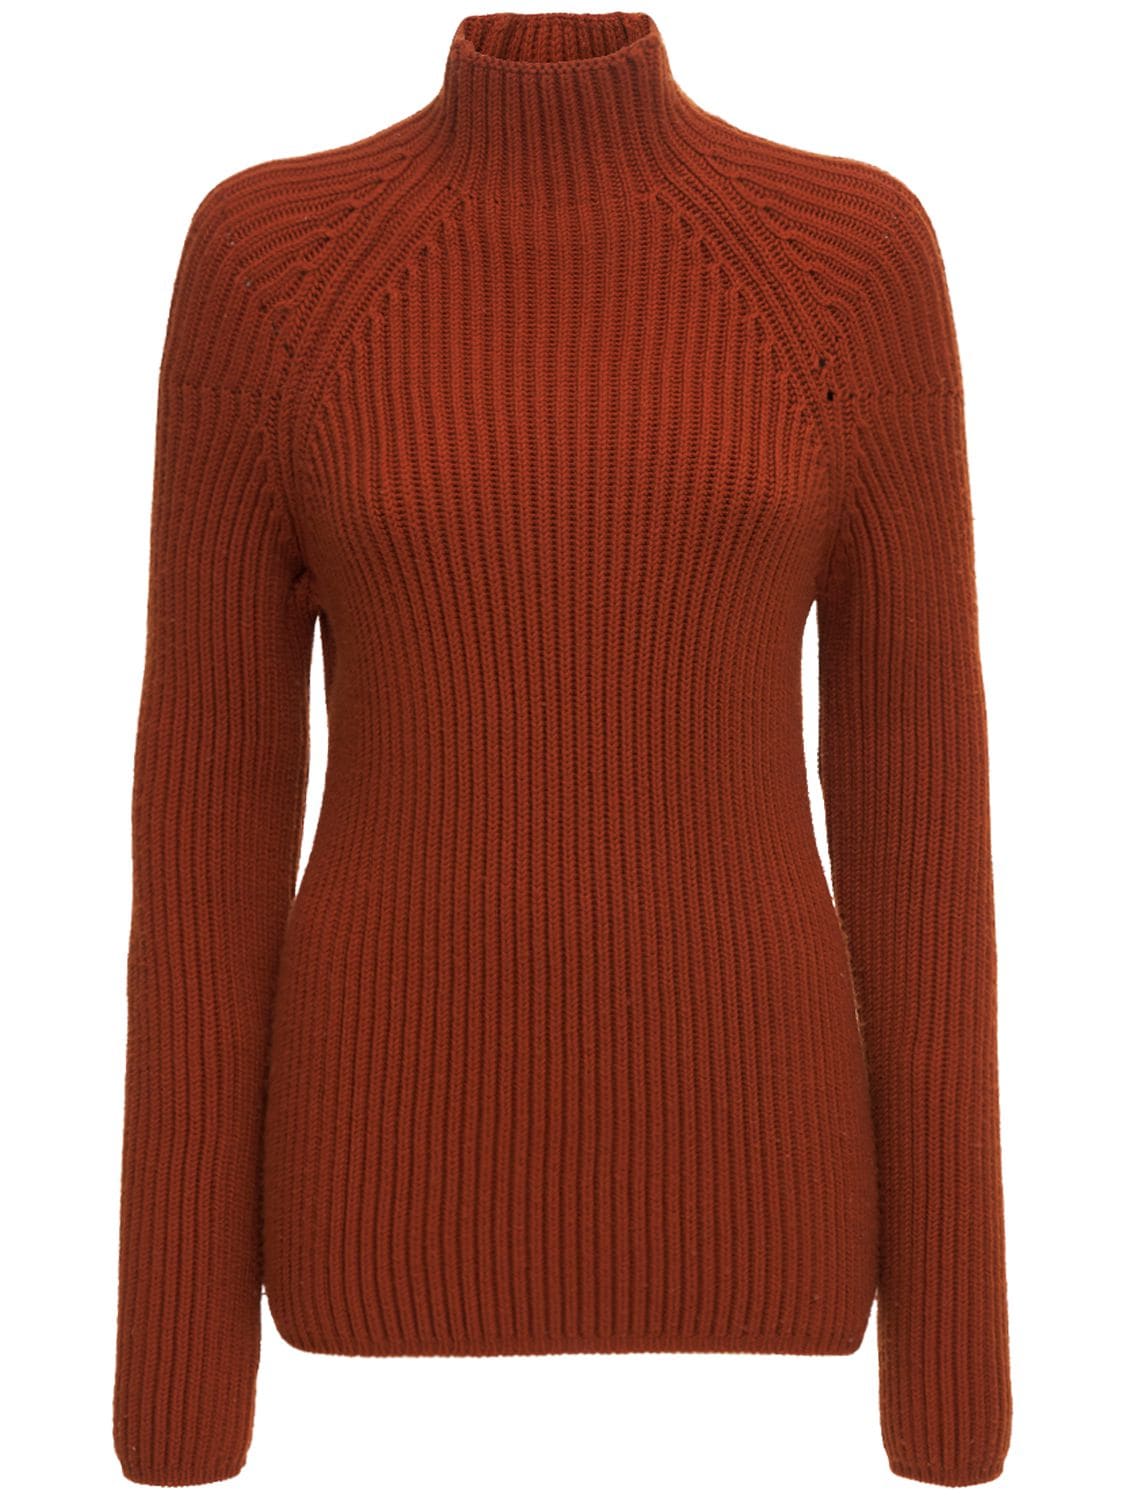 Yale Merino Wool Knit Rib Sweater